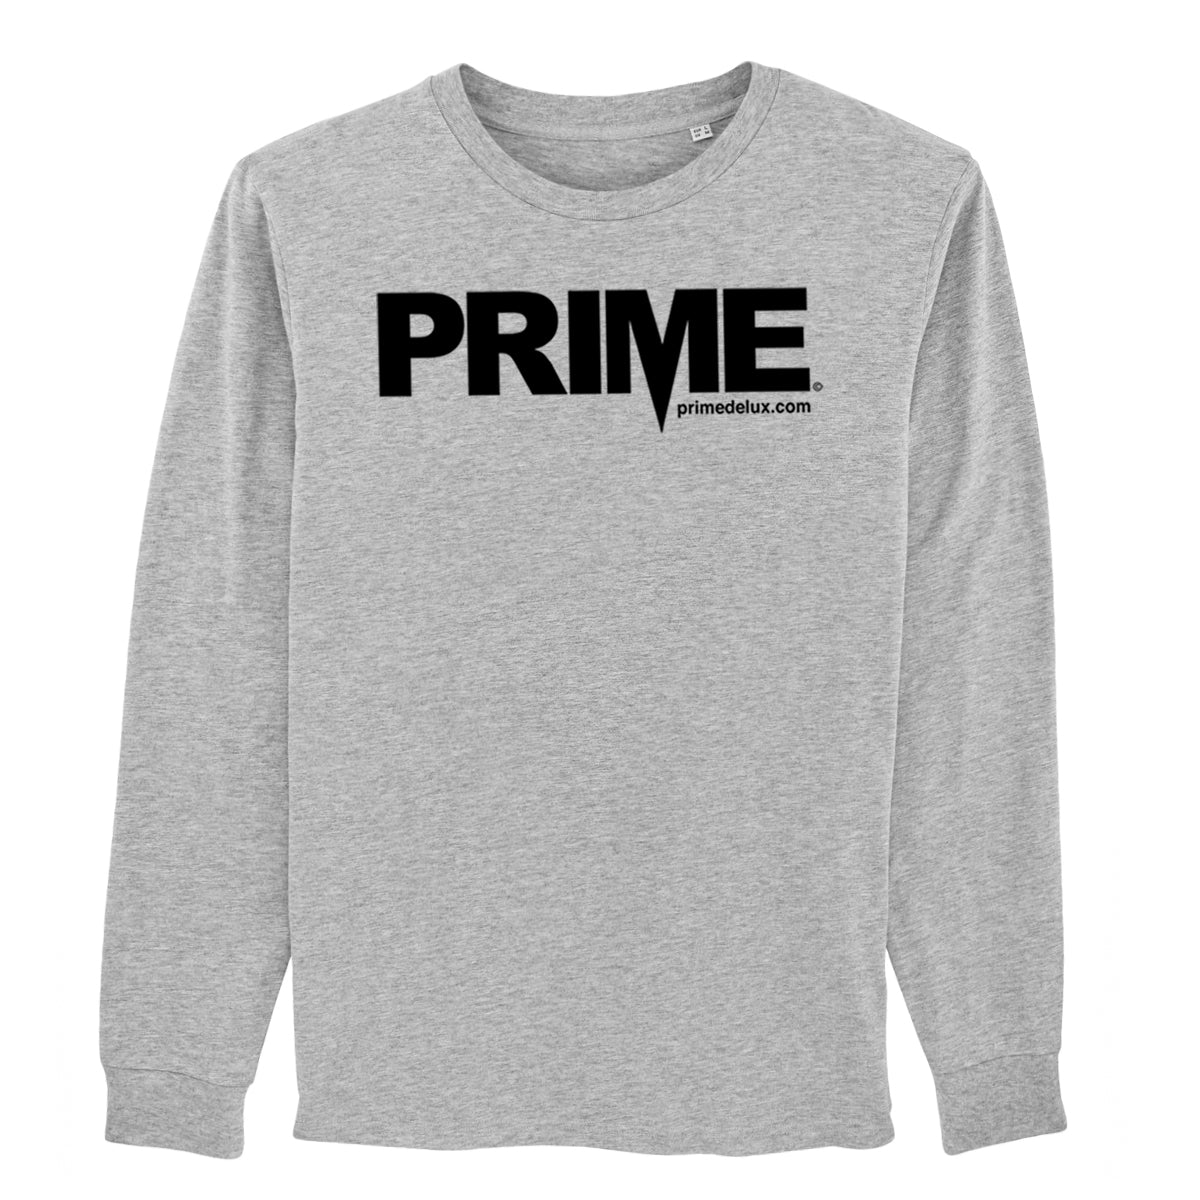 Prime Delux OG Long Sleeve T Shirt - Grey / Black - Prime Delux Store